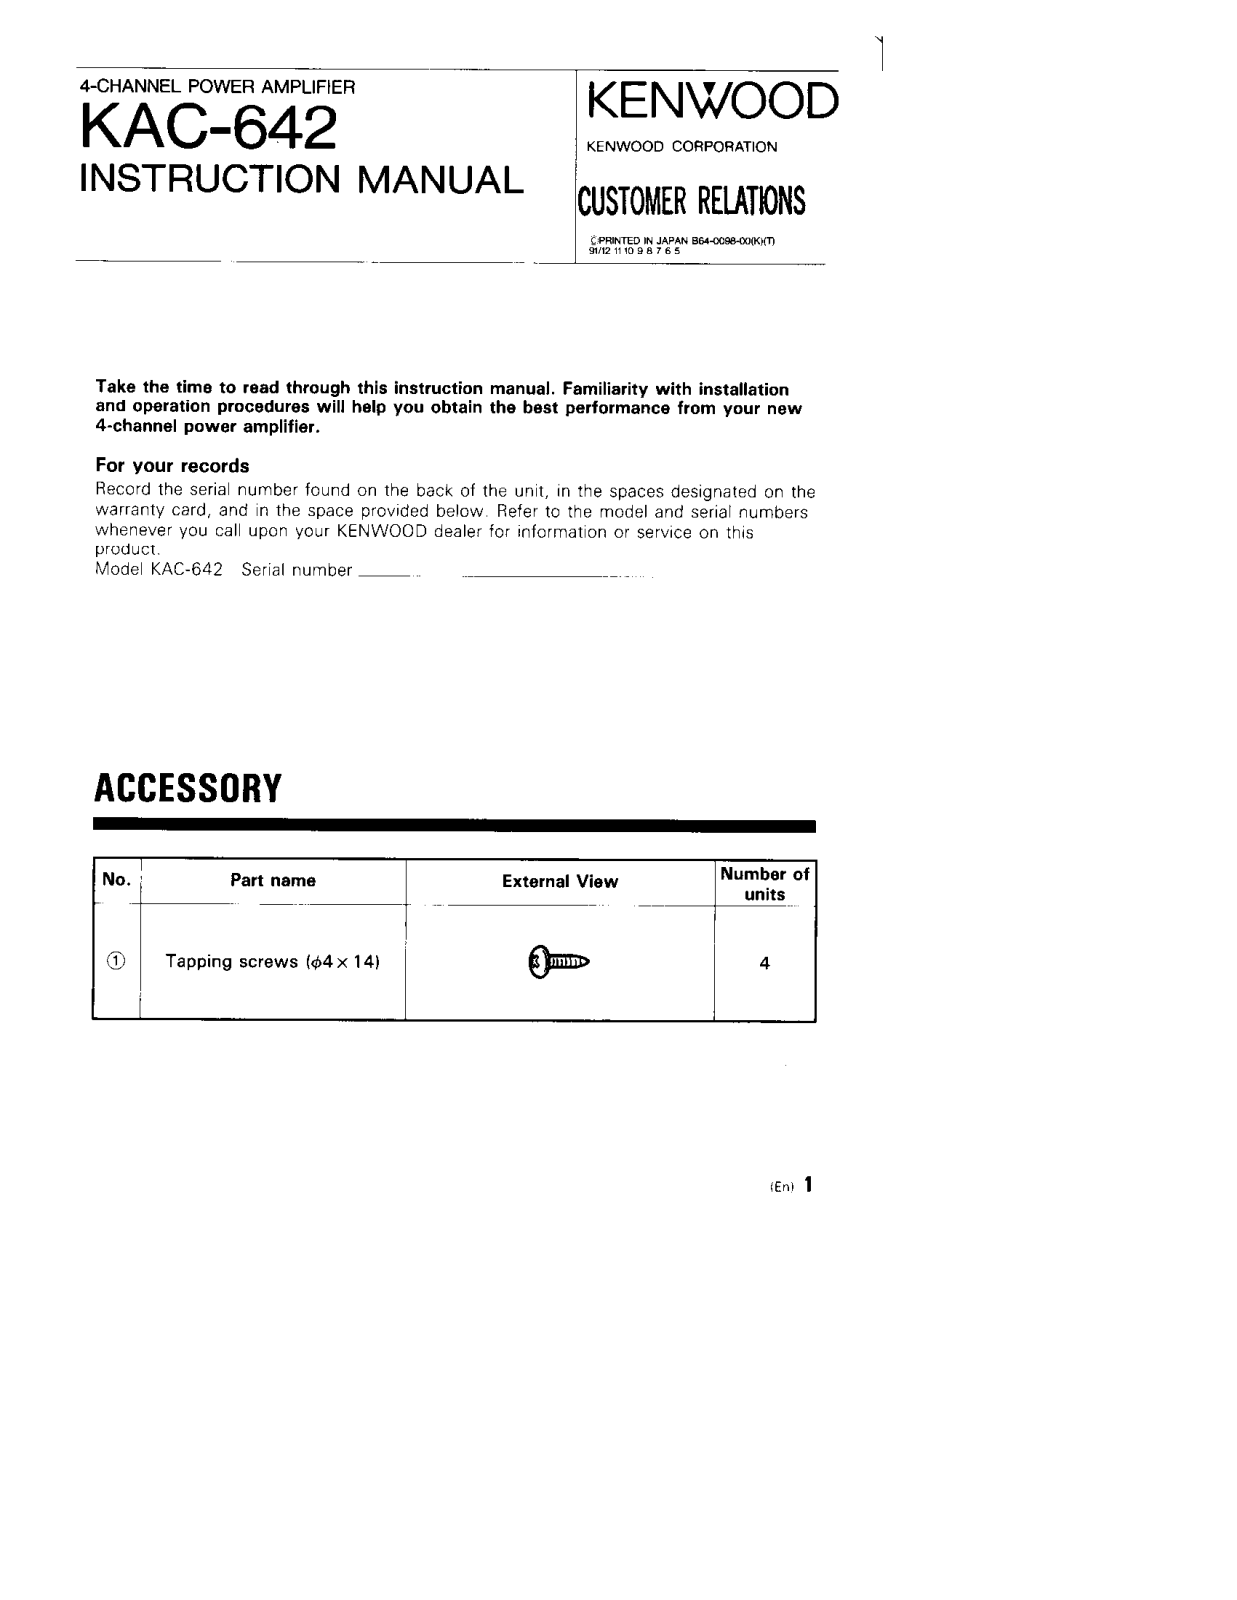 Kenwood KAC-642 Owner's Manual